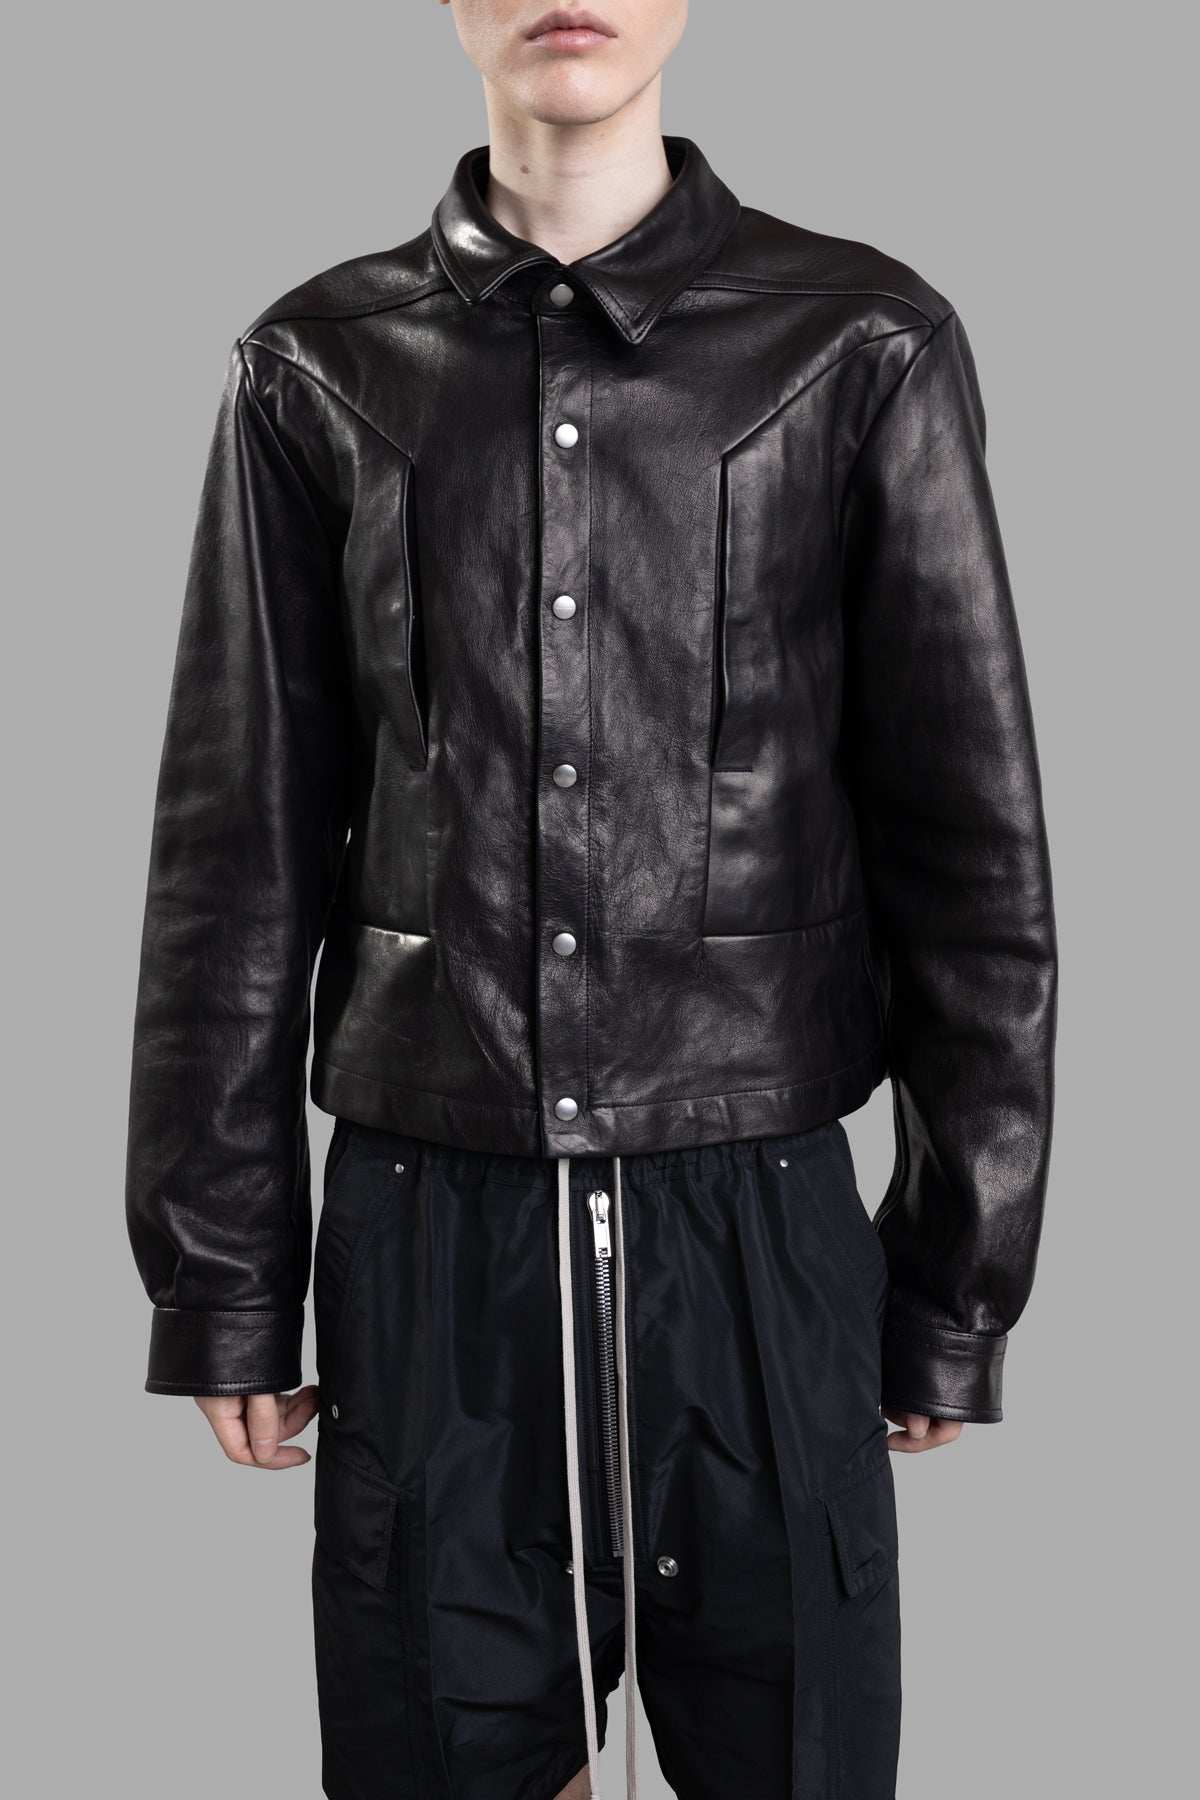 Fogpocket Leather Jacket